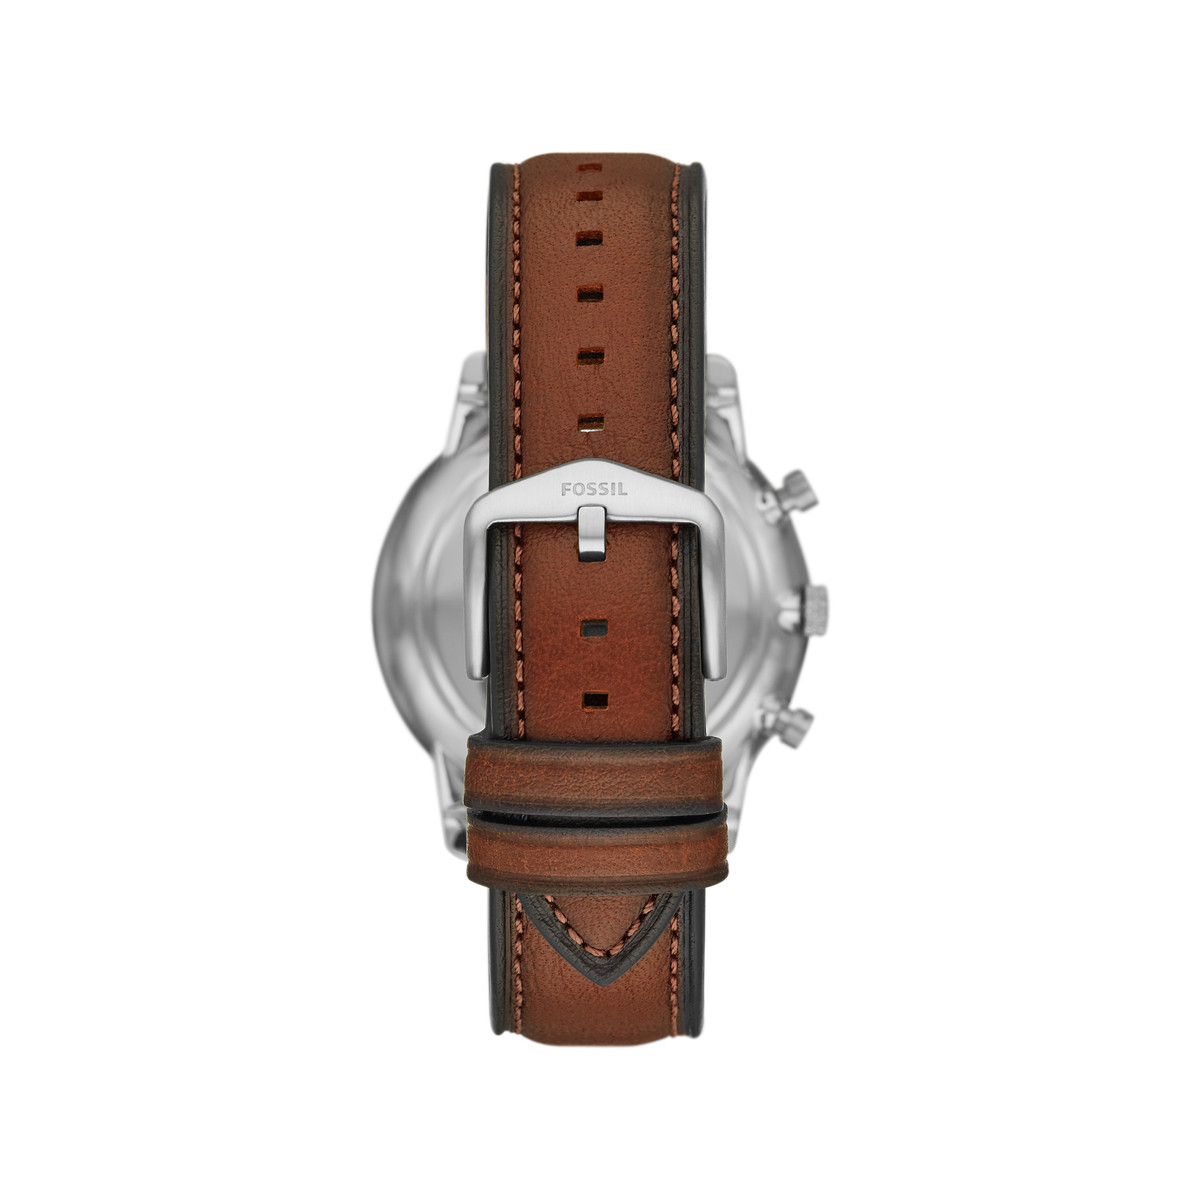 Montre FOSSIL homme chronographe acier bracelet cuir marron - vue 3